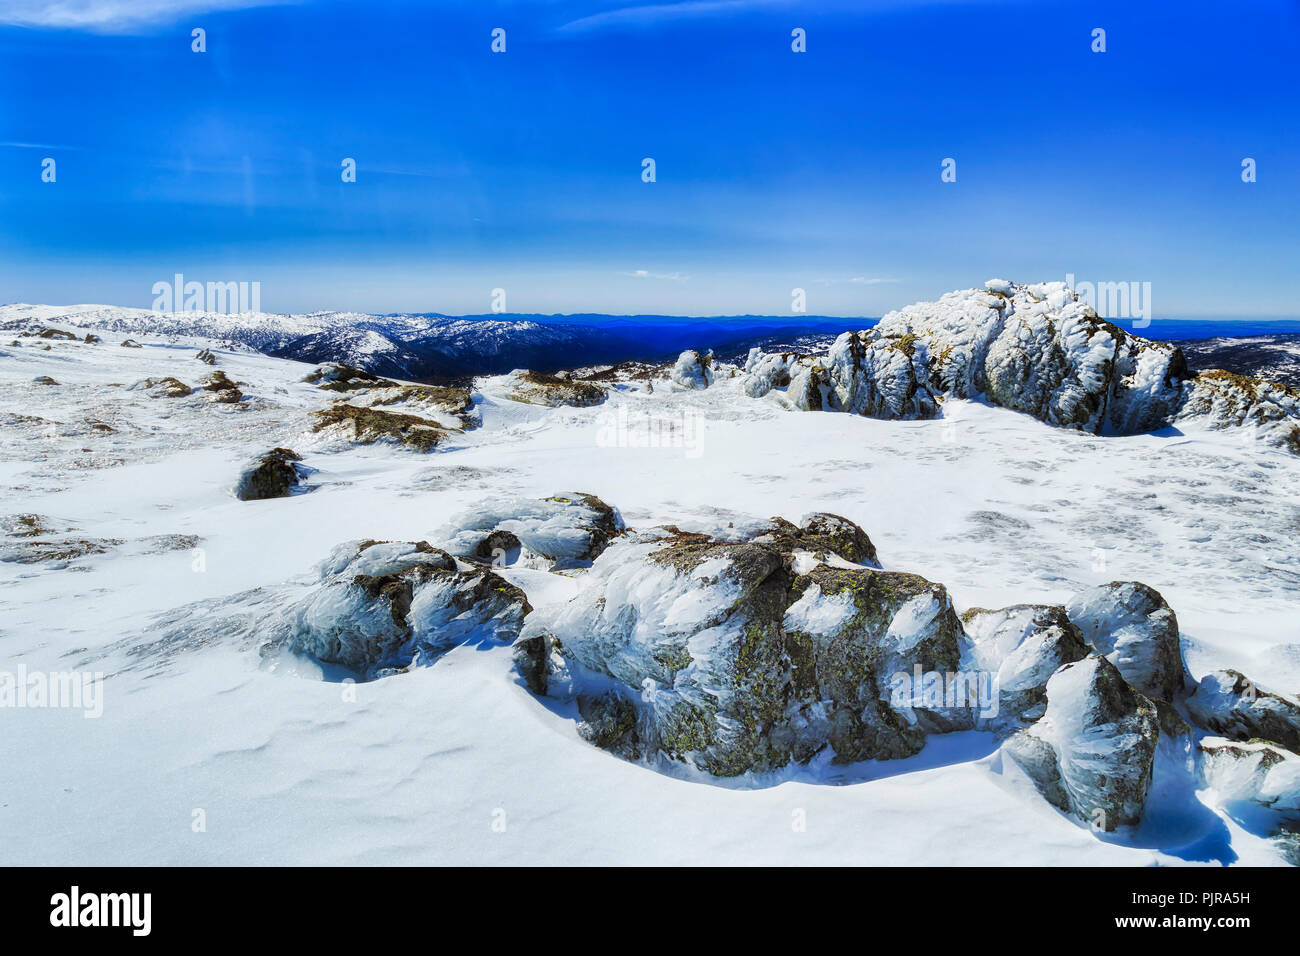 Les sommets des montagnes couvertes de neige de Perisher mountain peak arrière avec des pierres et de la mousse sur une froide journée d'hiver ensoleillée pendant la saison de ski. Banque D'Images